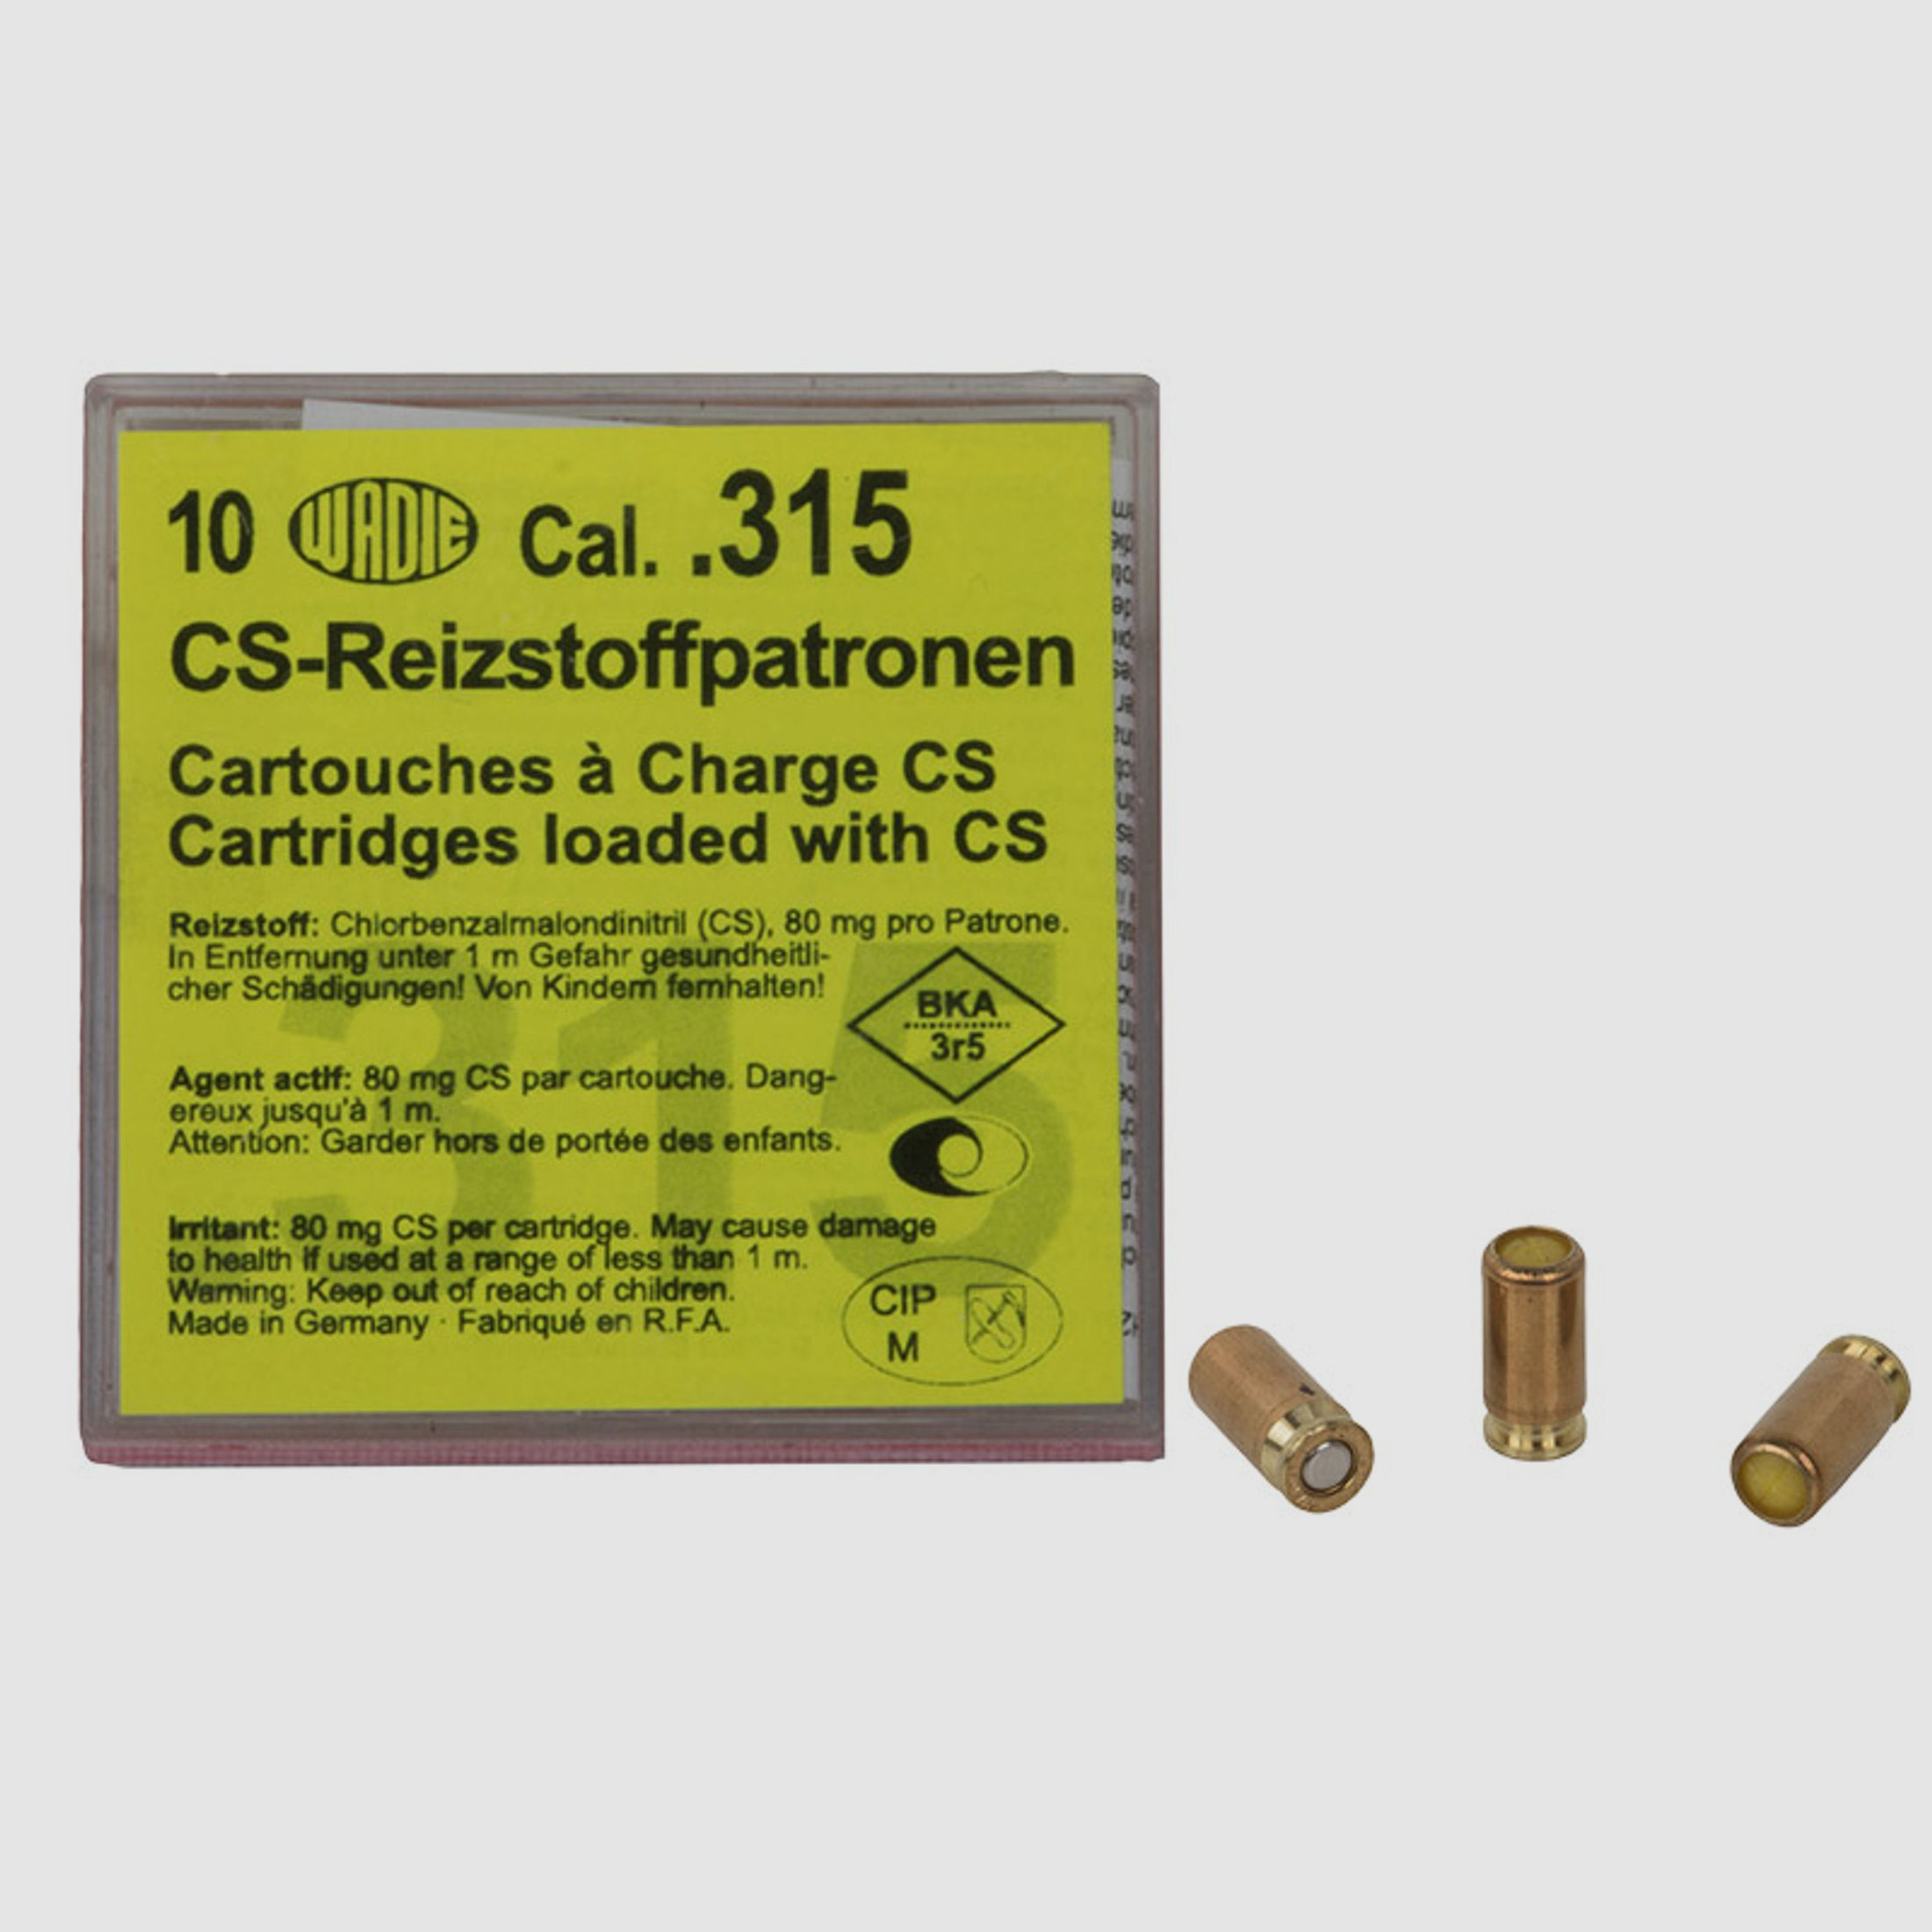 CS Gaspatronen Reizstoffpatronen Wadie Kaliber .315 fĂĽr Pistolen 80 mg Wirkstoff 10 StĂĽck (P18)